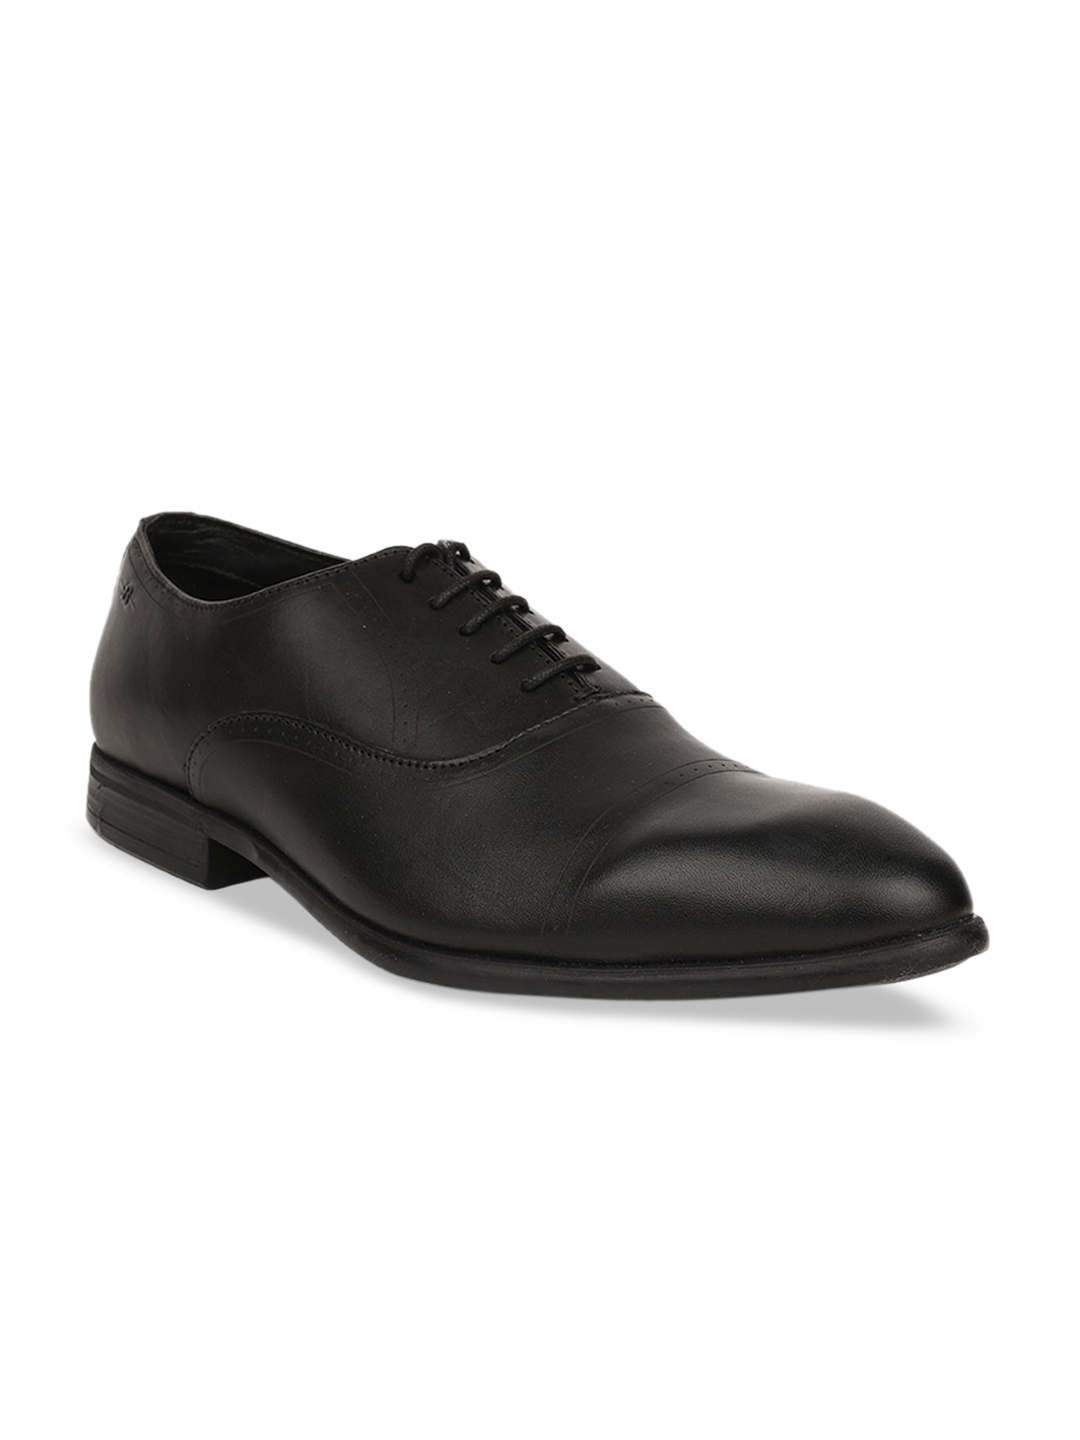 Buy Bata Men Black Solid Leather Formal Oxfords - Formal Shoes for Men ...